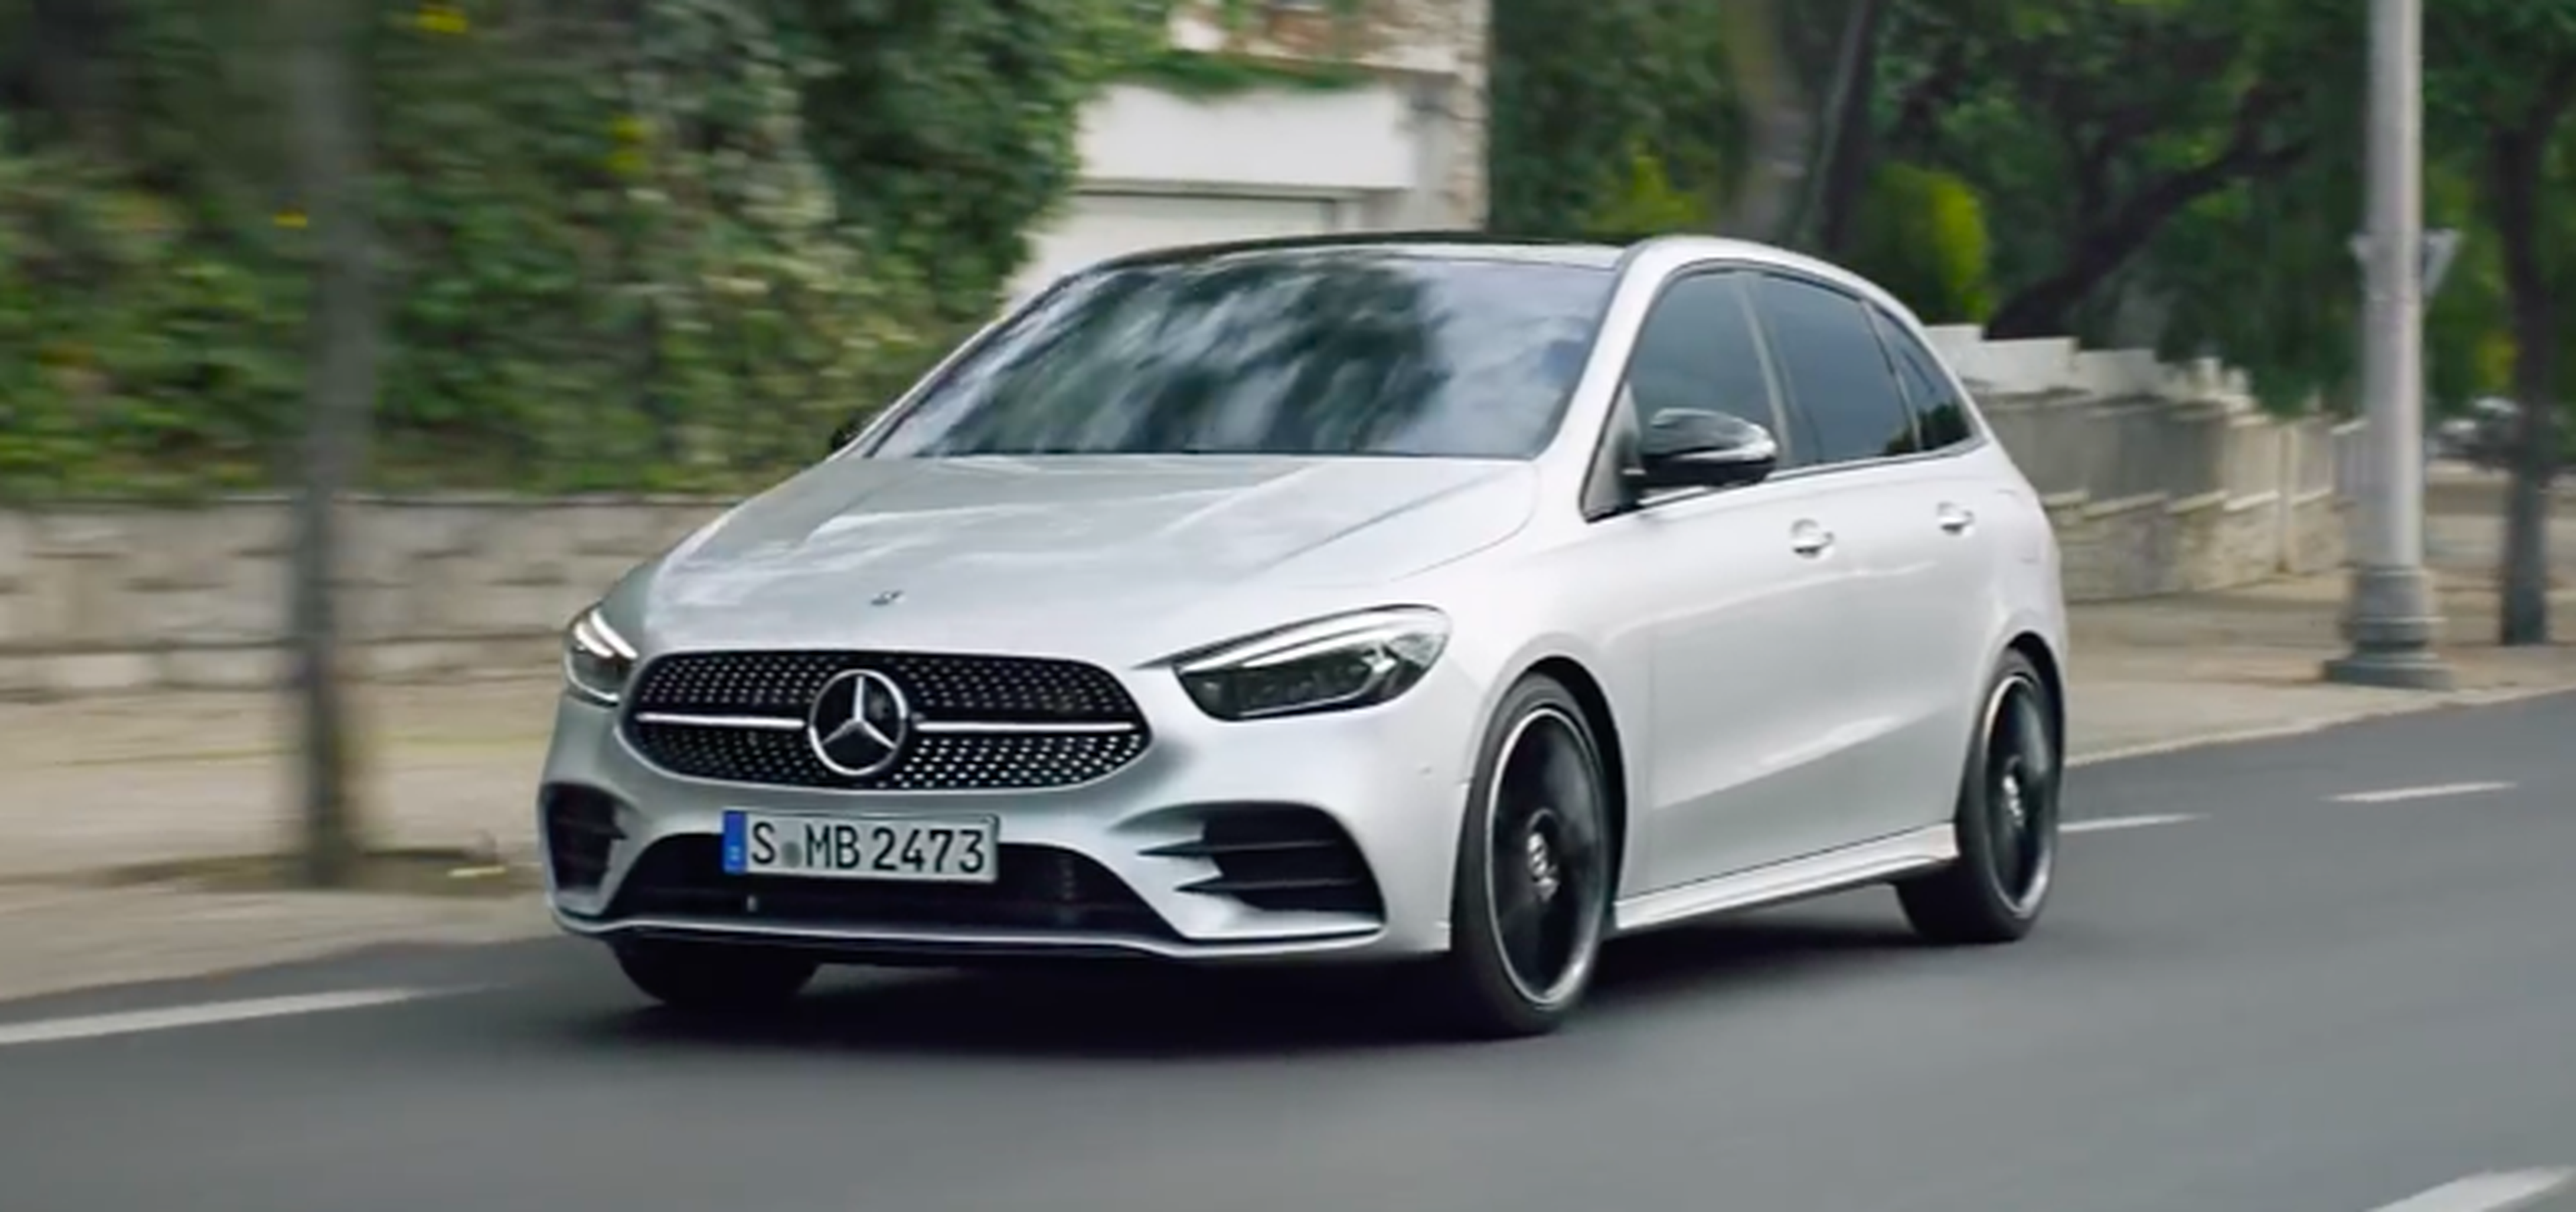 VÍDEO: El Mercedes Clase B, aquí tienes el primer teaser